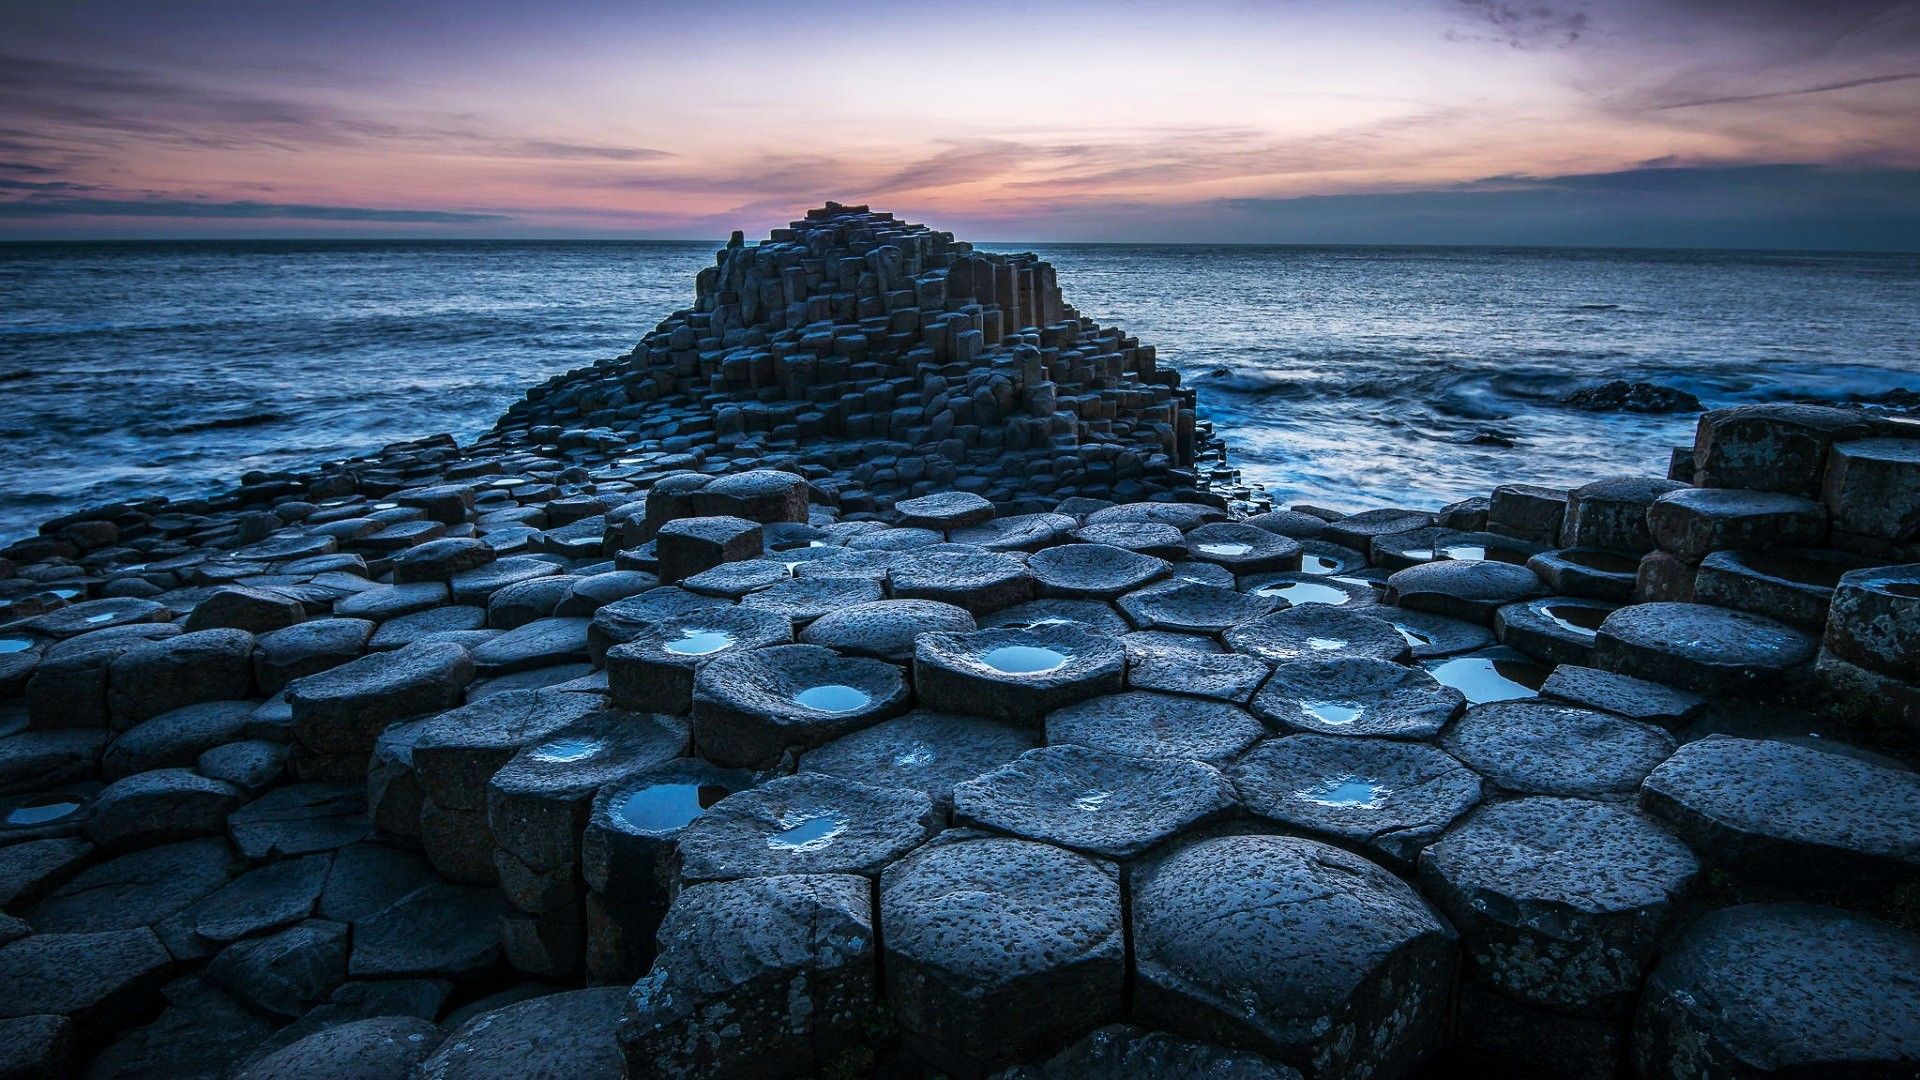 دانلود عکس ساحل دریا ایرلند با کیفیت Full HD